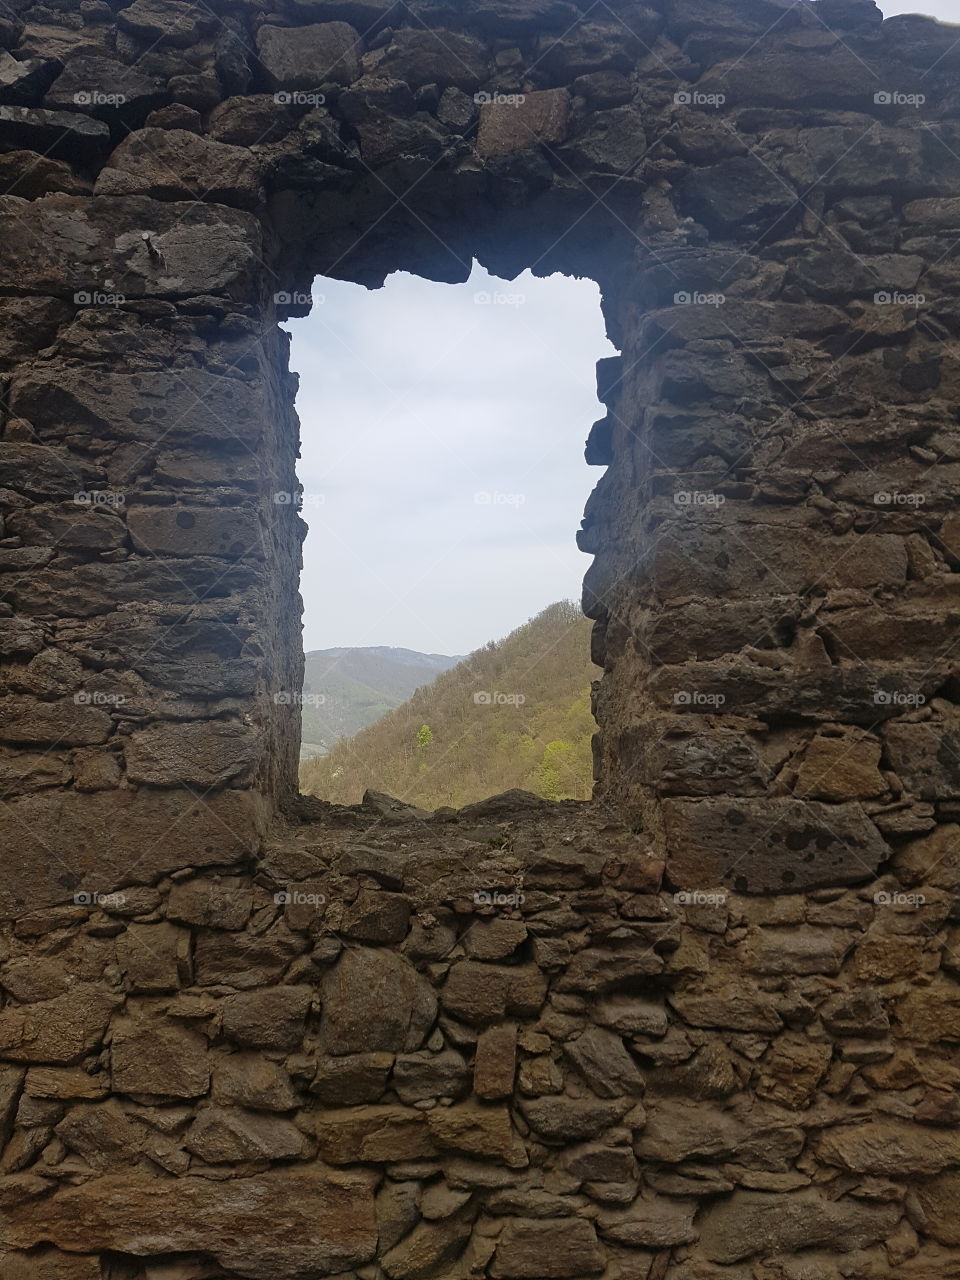 Castle Window